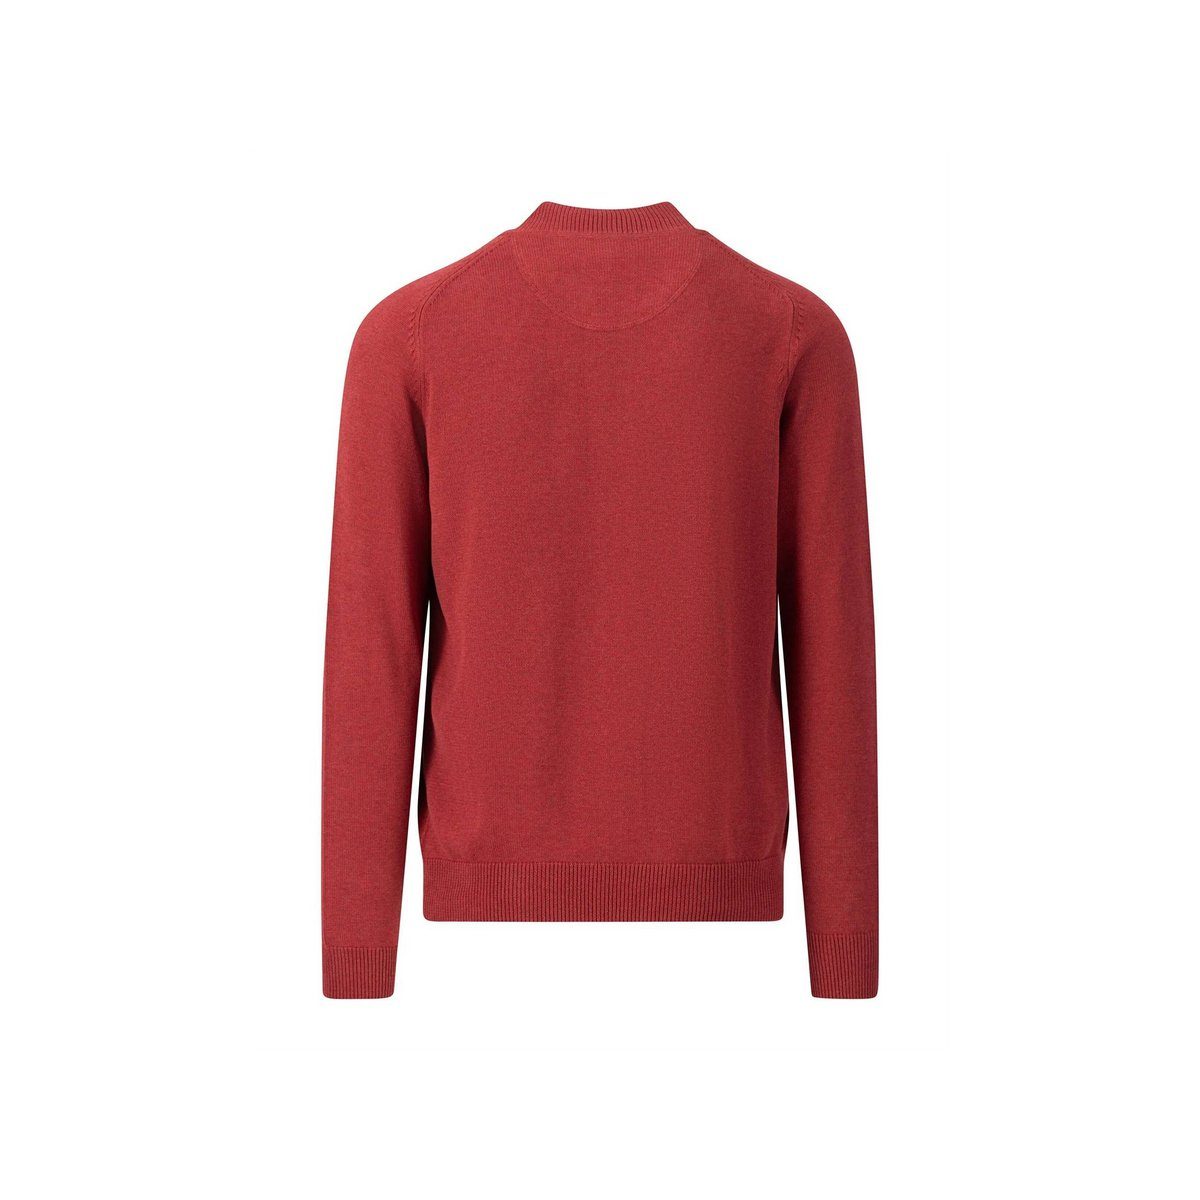 (1-tlg) textil passform rot FYNCH-HATTON V-Ausschnitt-Pullover